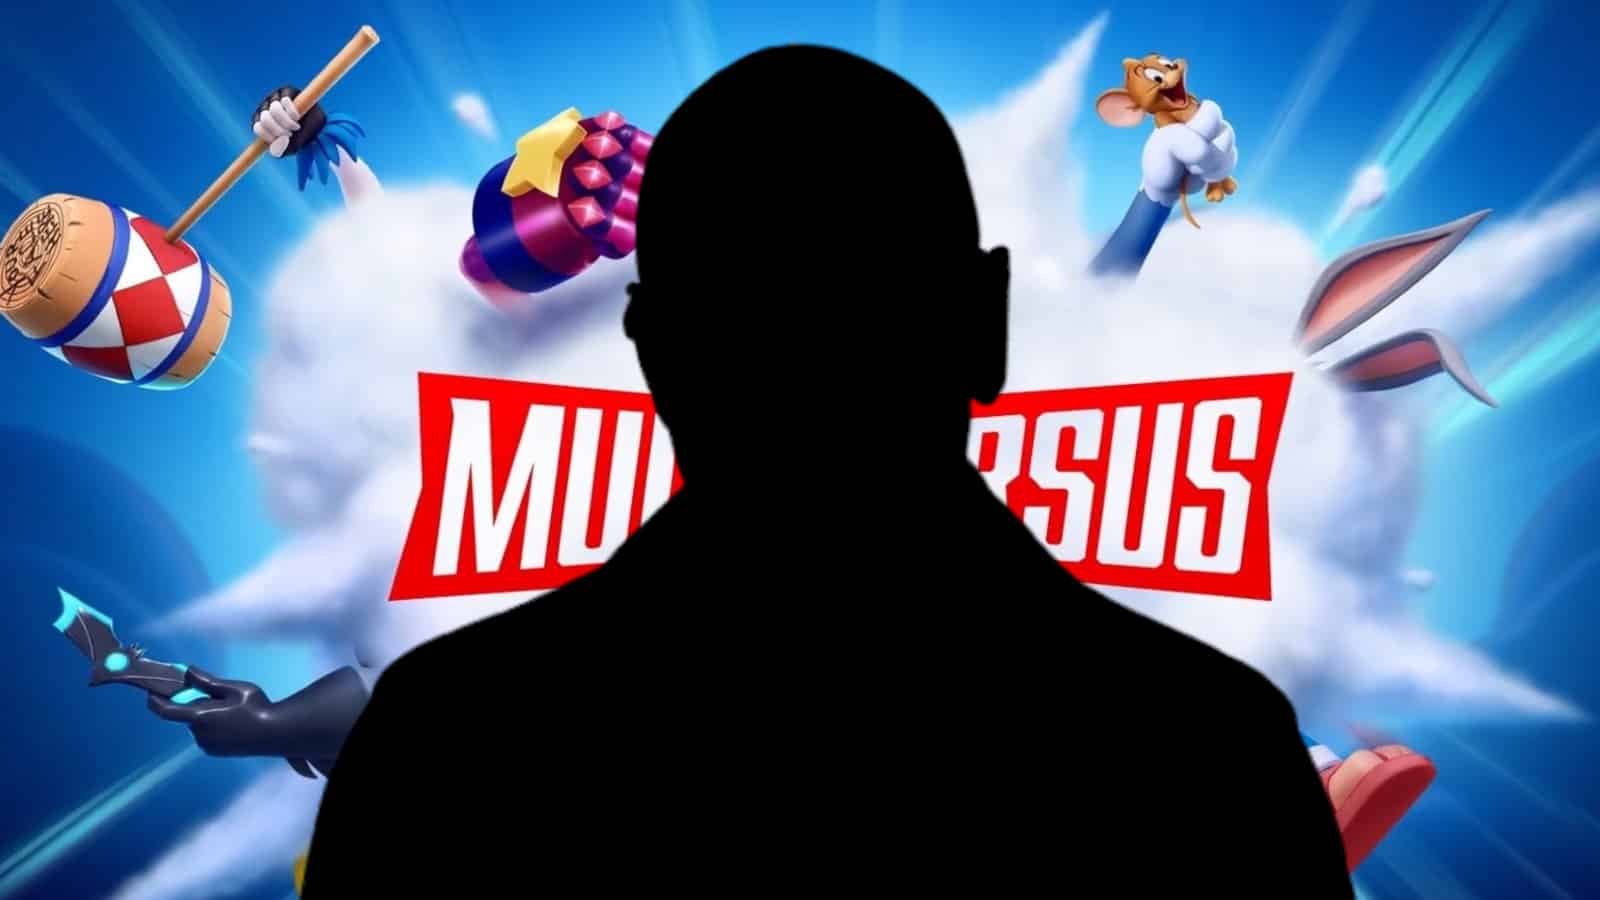 Warner anuncia MultiVersus, game de luta no estilo Smash Bros